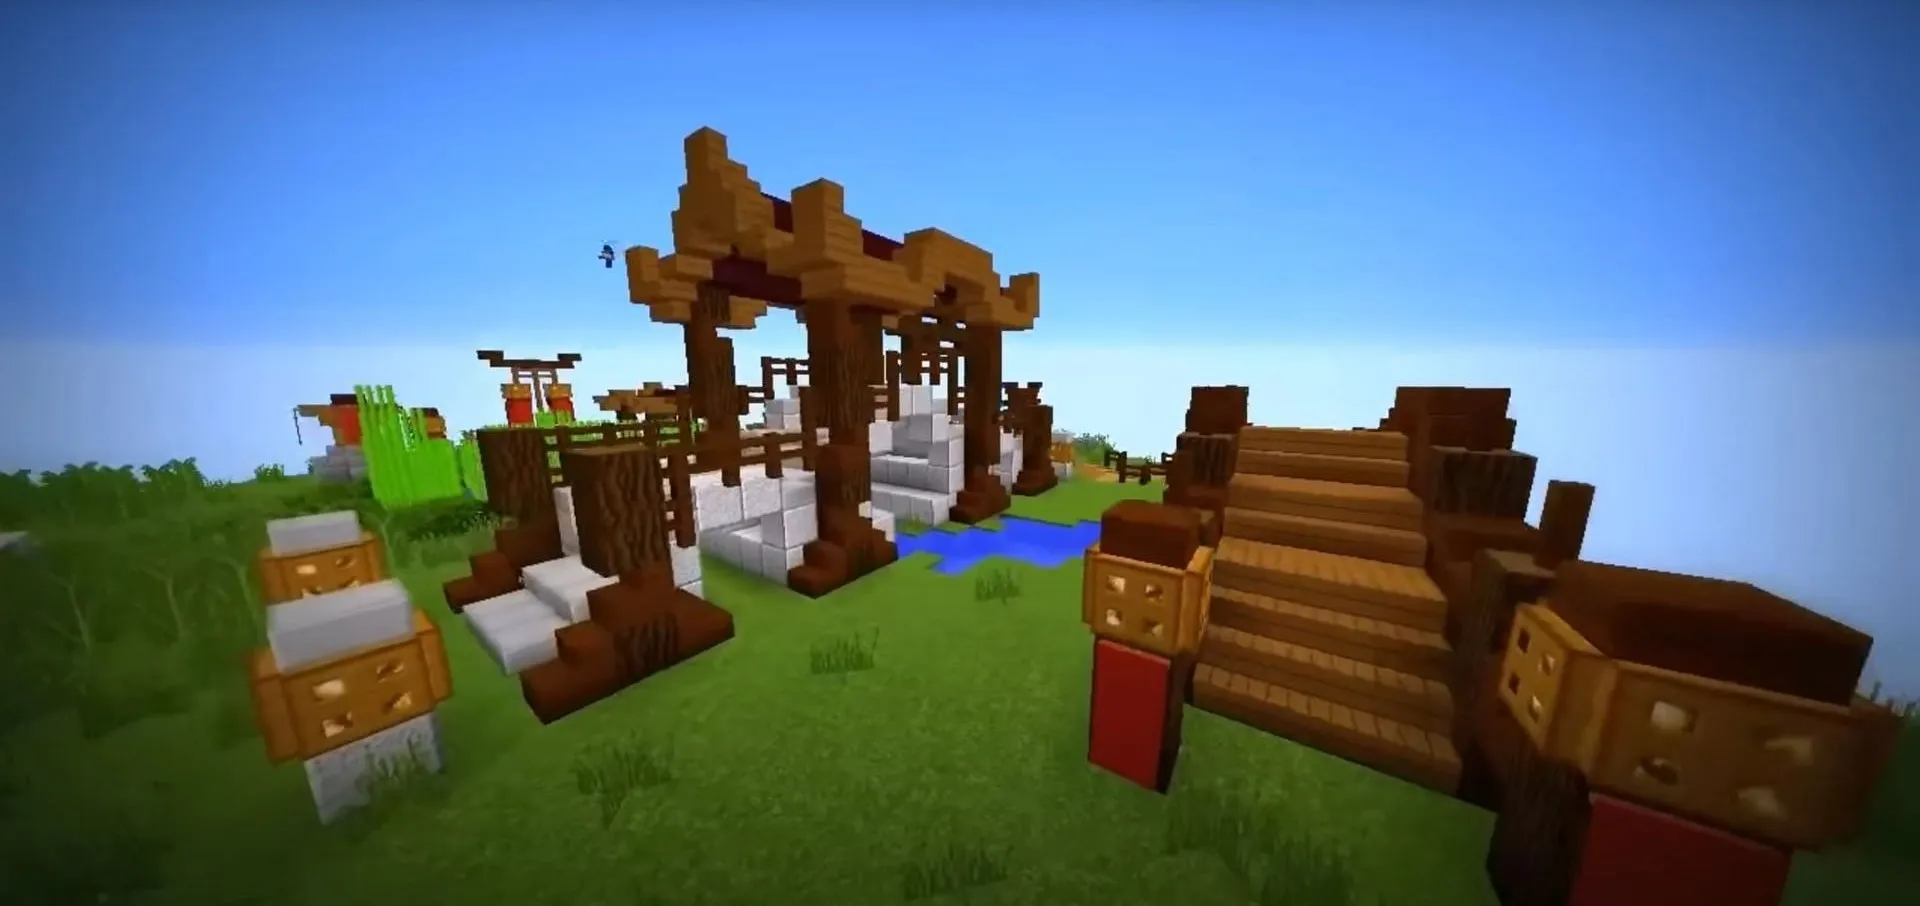 10 thiết kế cổng vòm độc đáo dành cho bạn trong Minecraft